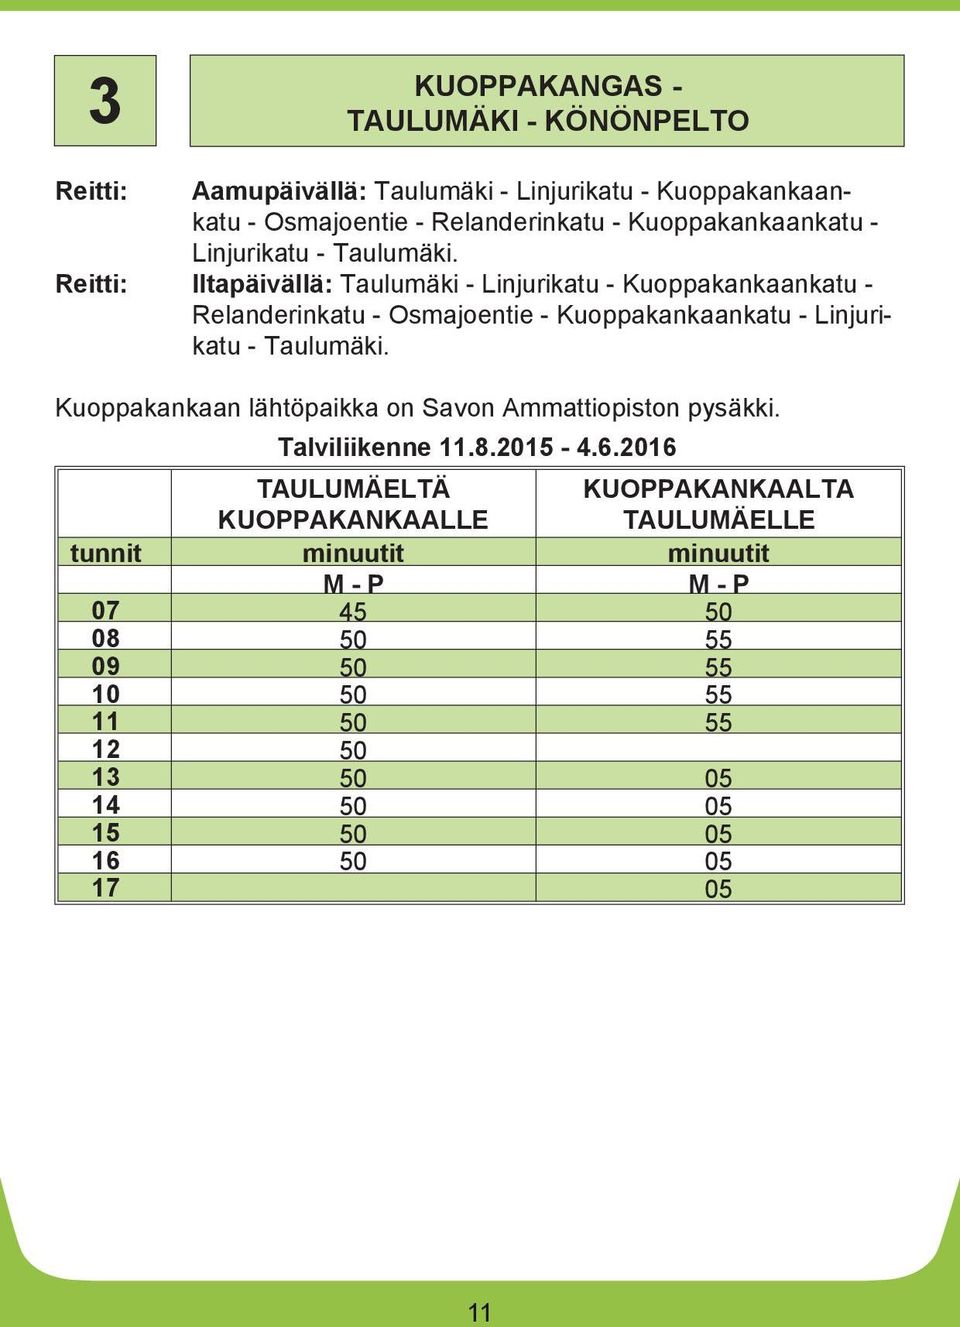 Reitti: Iltapäivällä: Taulumäki - Linjurikatu - Kuoppakankaankatu - Relanderinkatu - Osmajoentie - Kuoppakankaankatu -